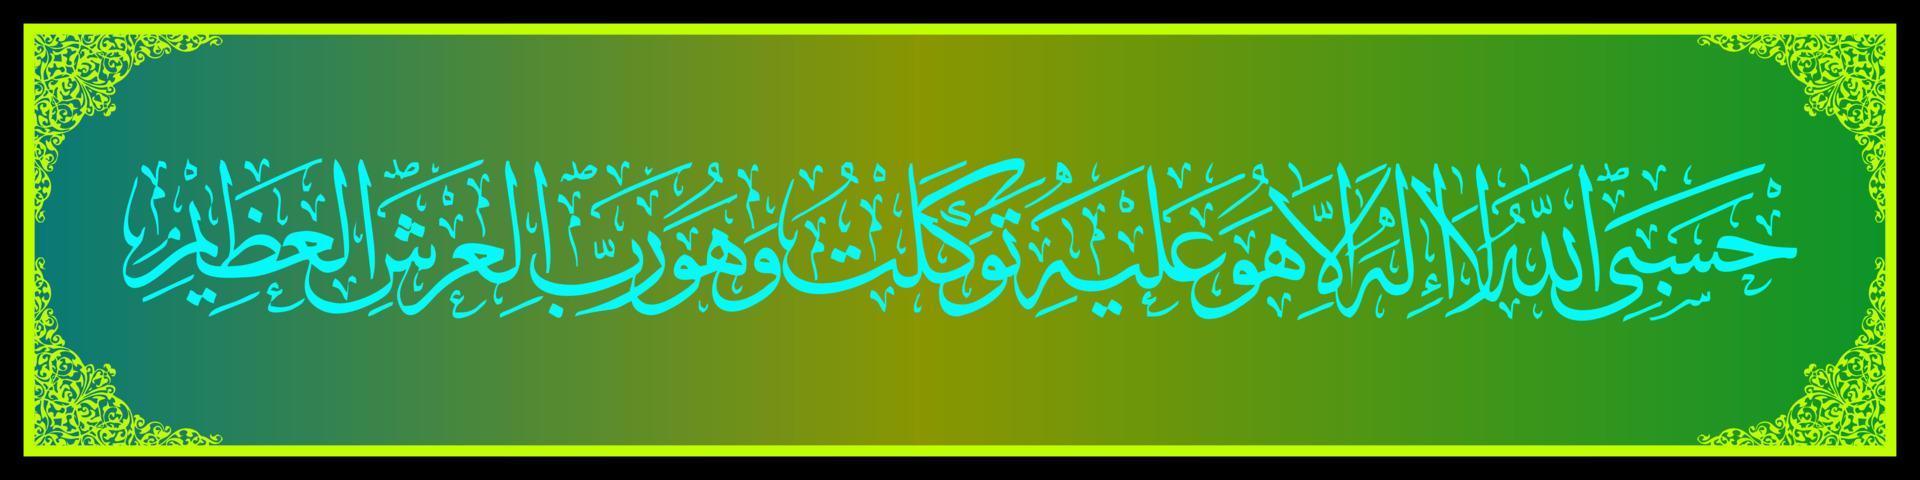 caligrafía árabe al quran surah en taubah 129, traduzca así que si se alejan de la fe, entonces diga muhammad, allah es suficiente para mí, no hay más dios que él. vector